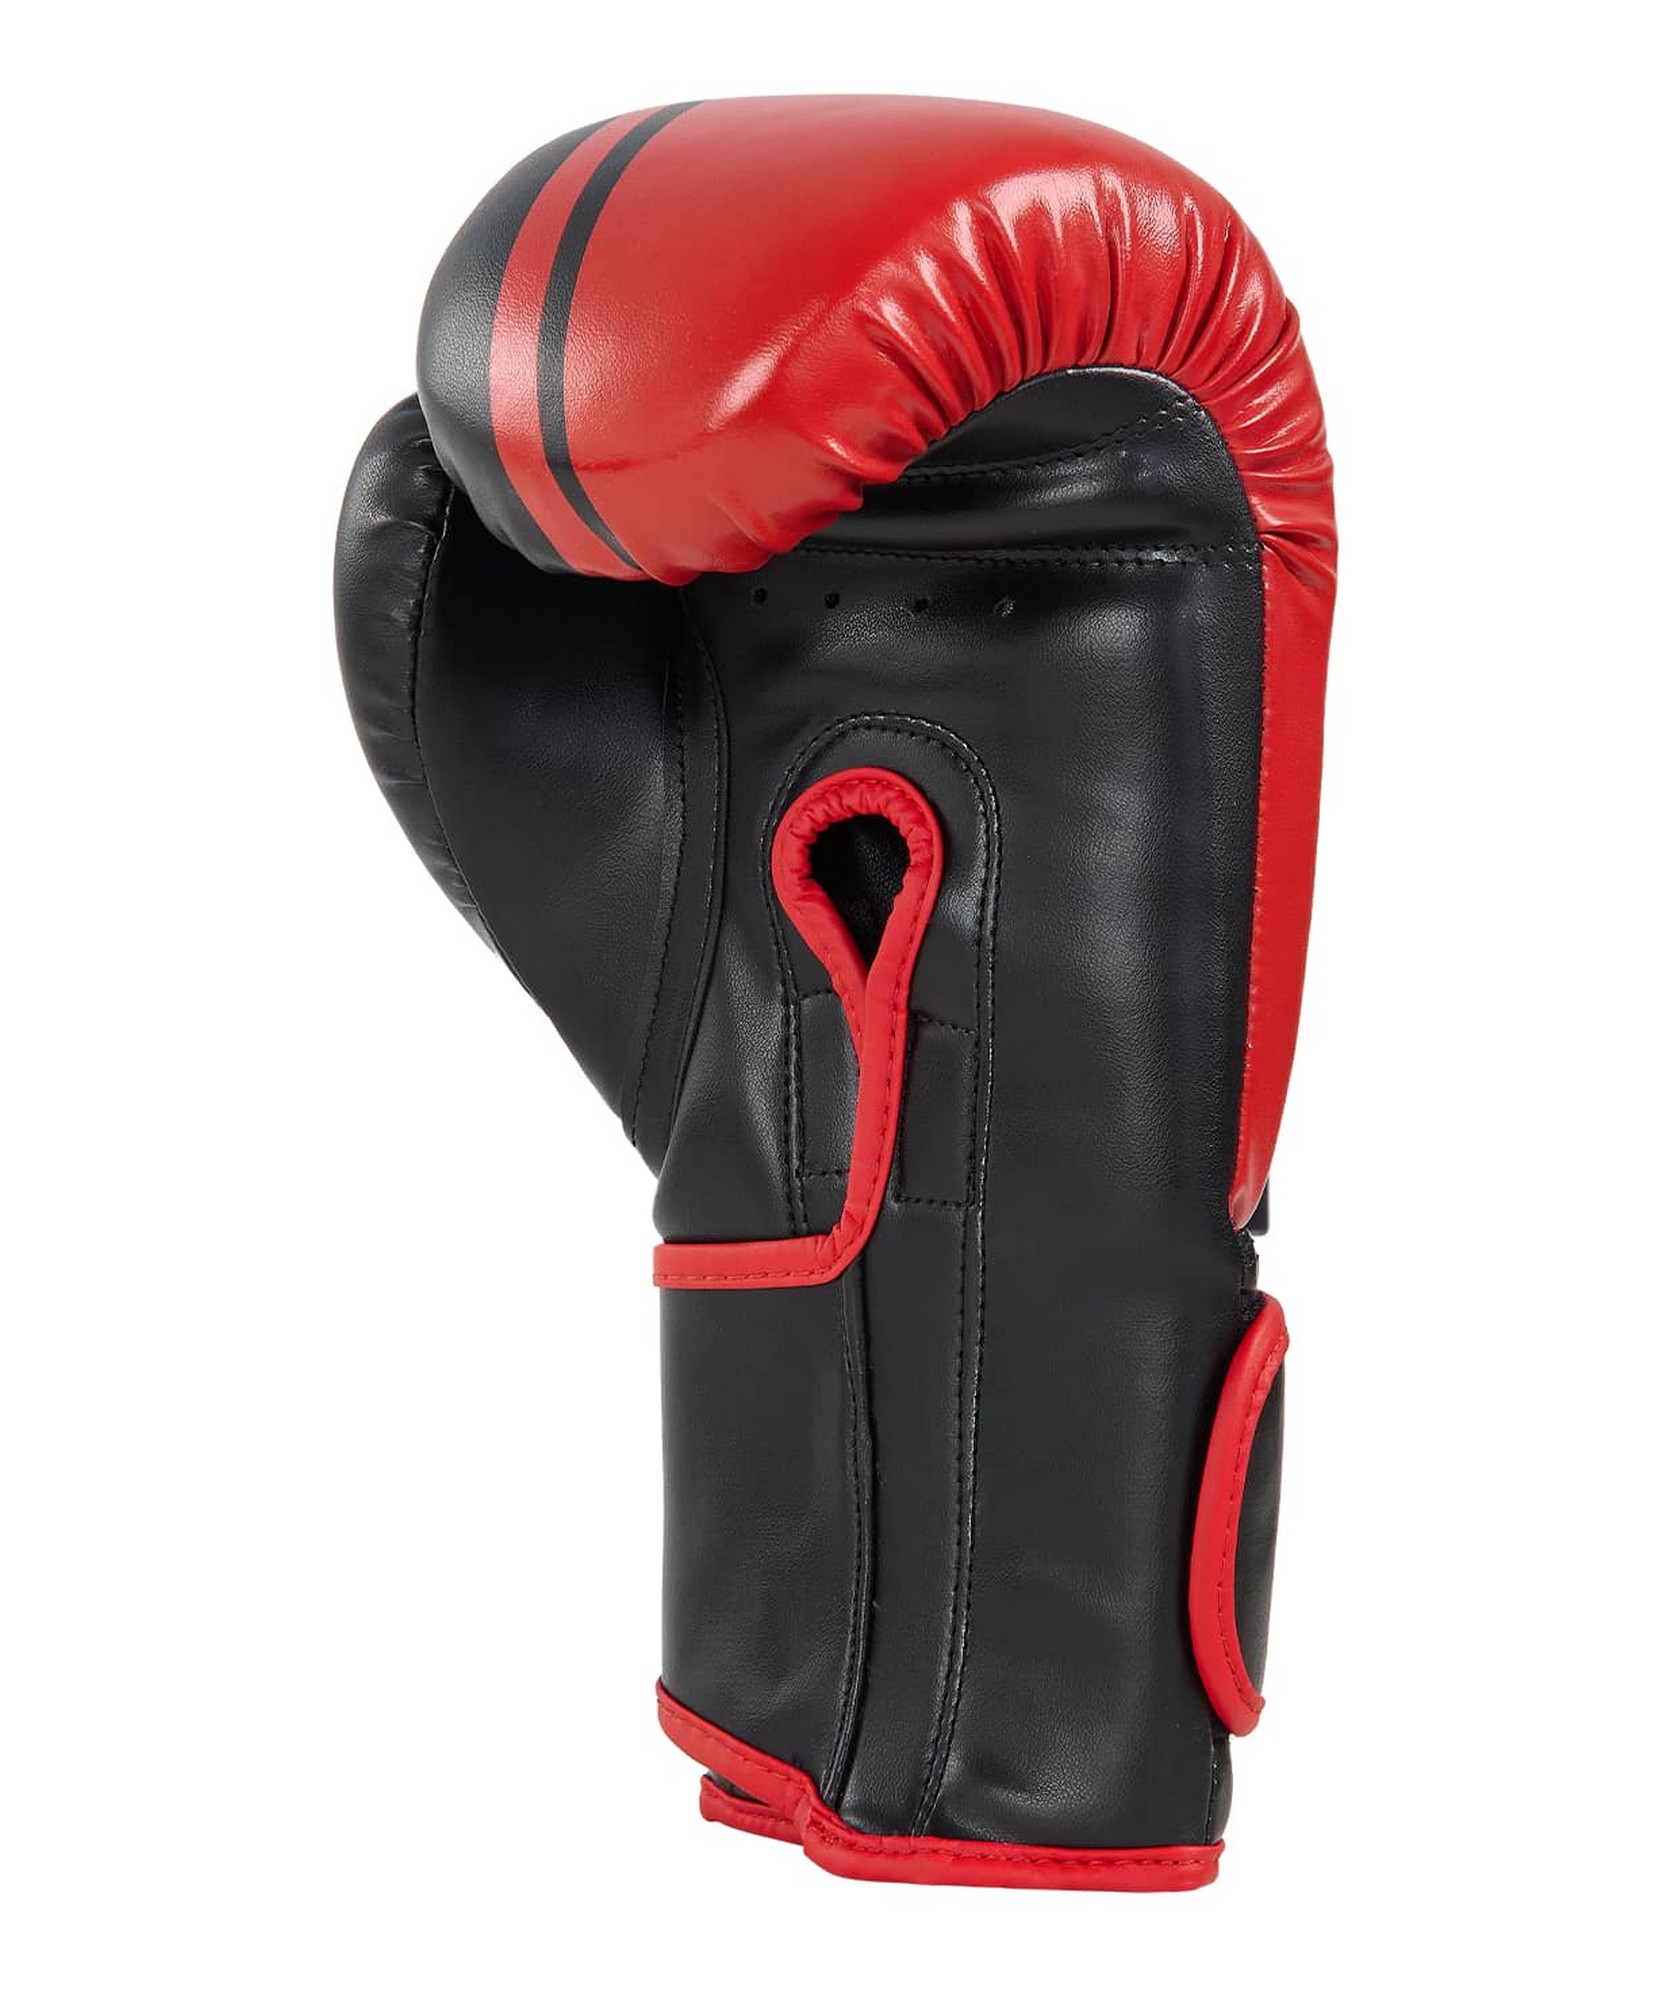 Перчатки боксерские Insane Montu ПУ, 10 oz, красный 1663_2000